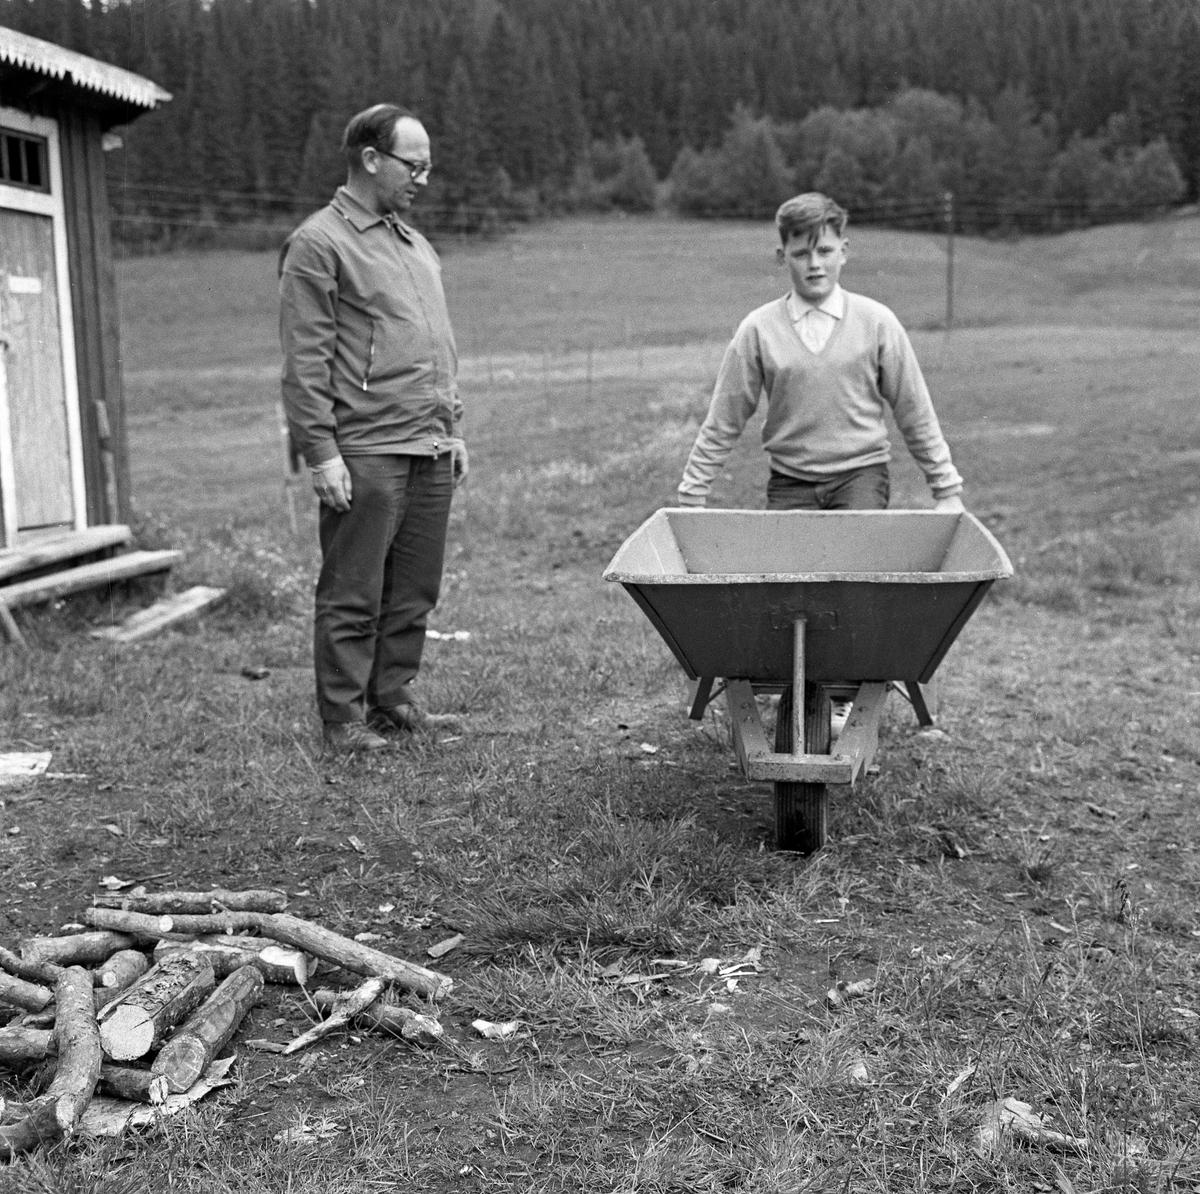 Gutt med trillebår, fotografert under en 4H-leir i Søre Osen i Trysil i Hedmark i 1962. Da dette bildet ble tatt sto jenta med bøyde knær, enten for å løfte eller sette fra seg den tunge båra. En voksen mann sto og betraktet henne, antakelig for å bedømme arbeidet. Bak ham ser vi en utedo.